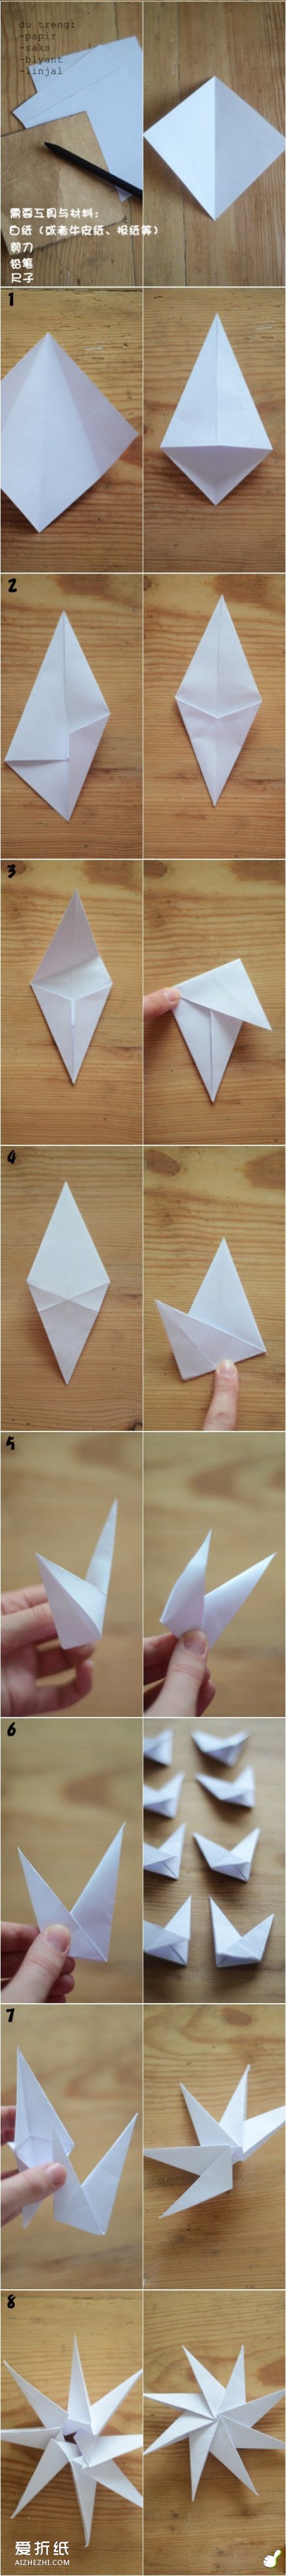 八角星的折法图解 折纸立体八角星教程- www.aizhezhi.com